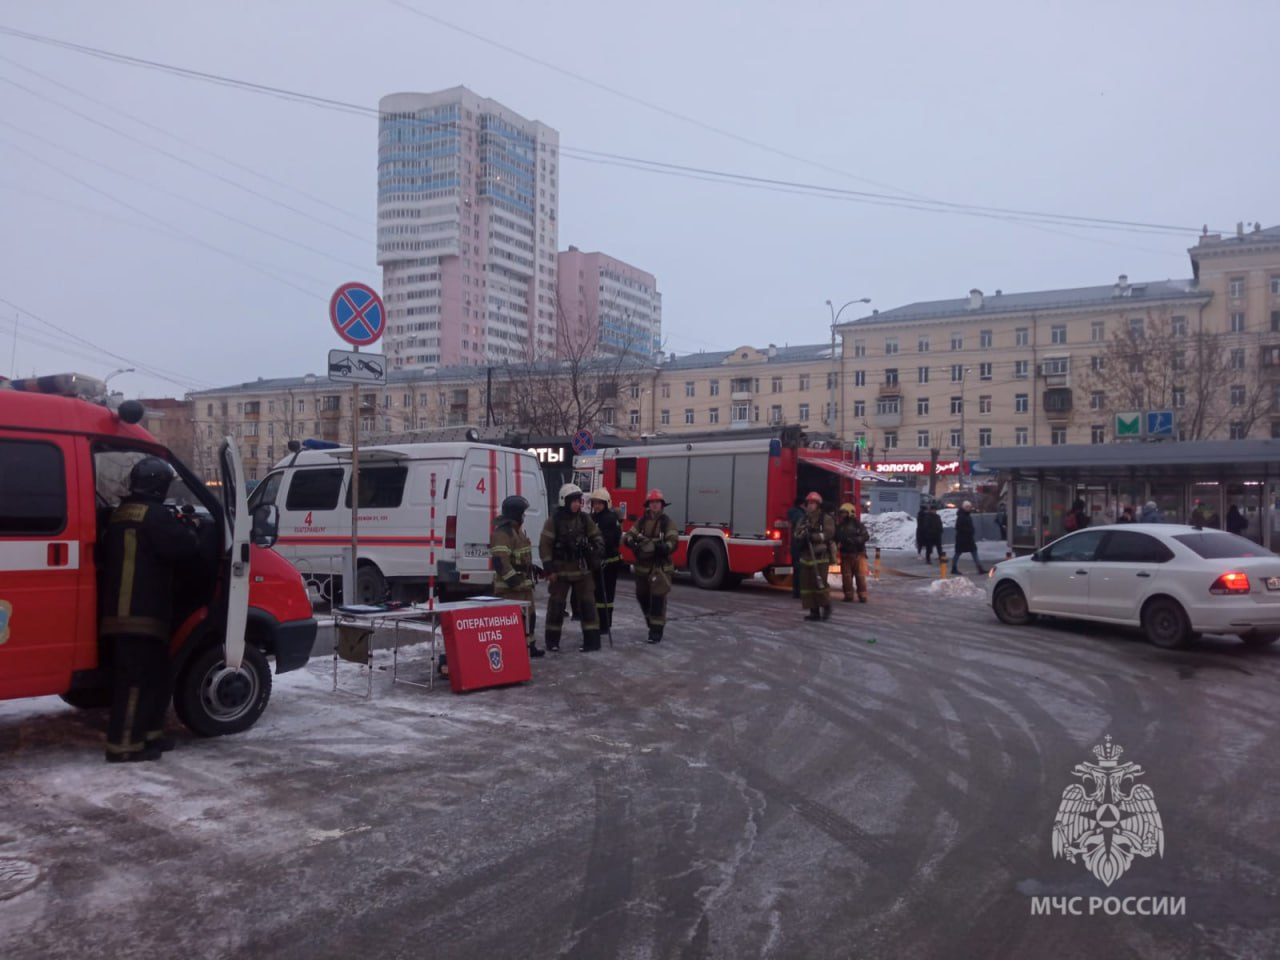 Пожар в метро Екатеринбурга: переходы заполнил дым, эвакуированы сотни людей